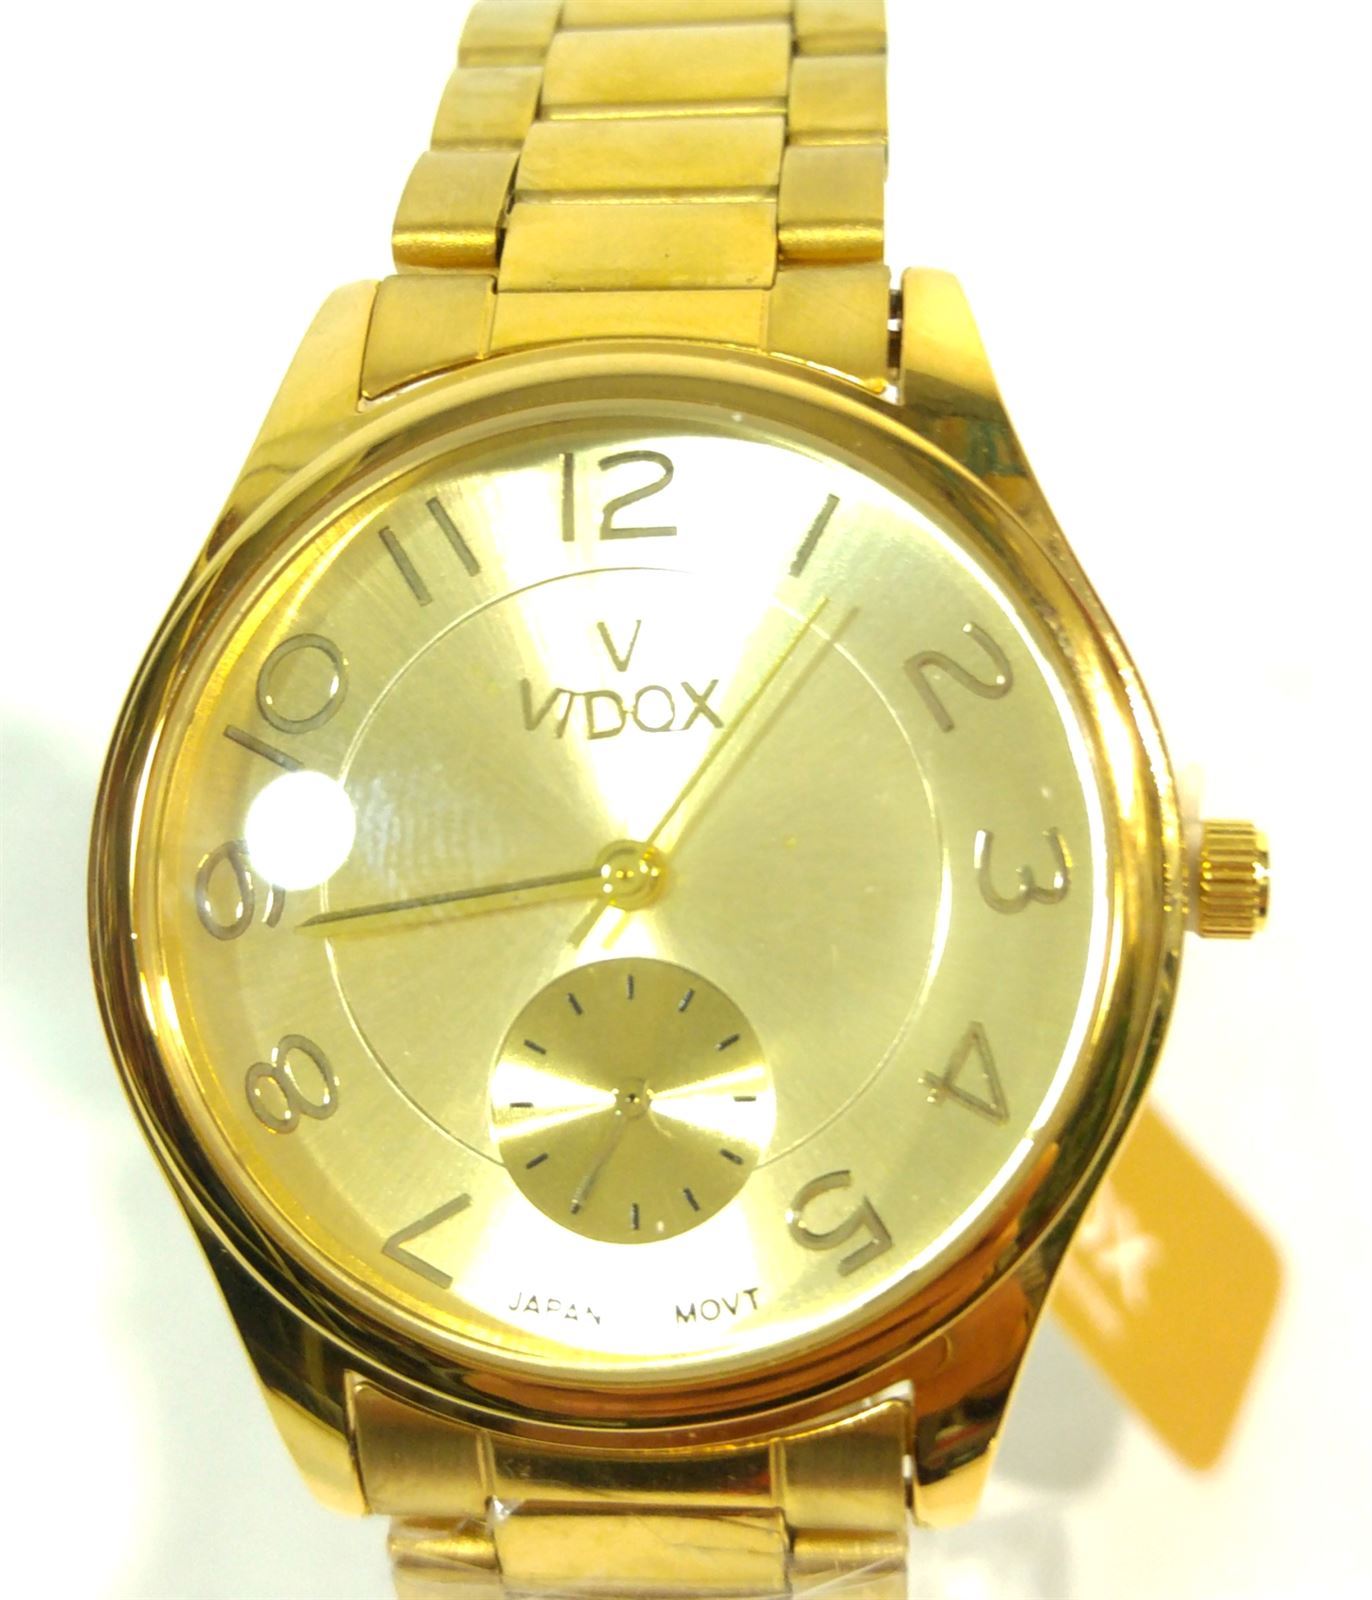 Reloj metalizado dorado - Imagen 2